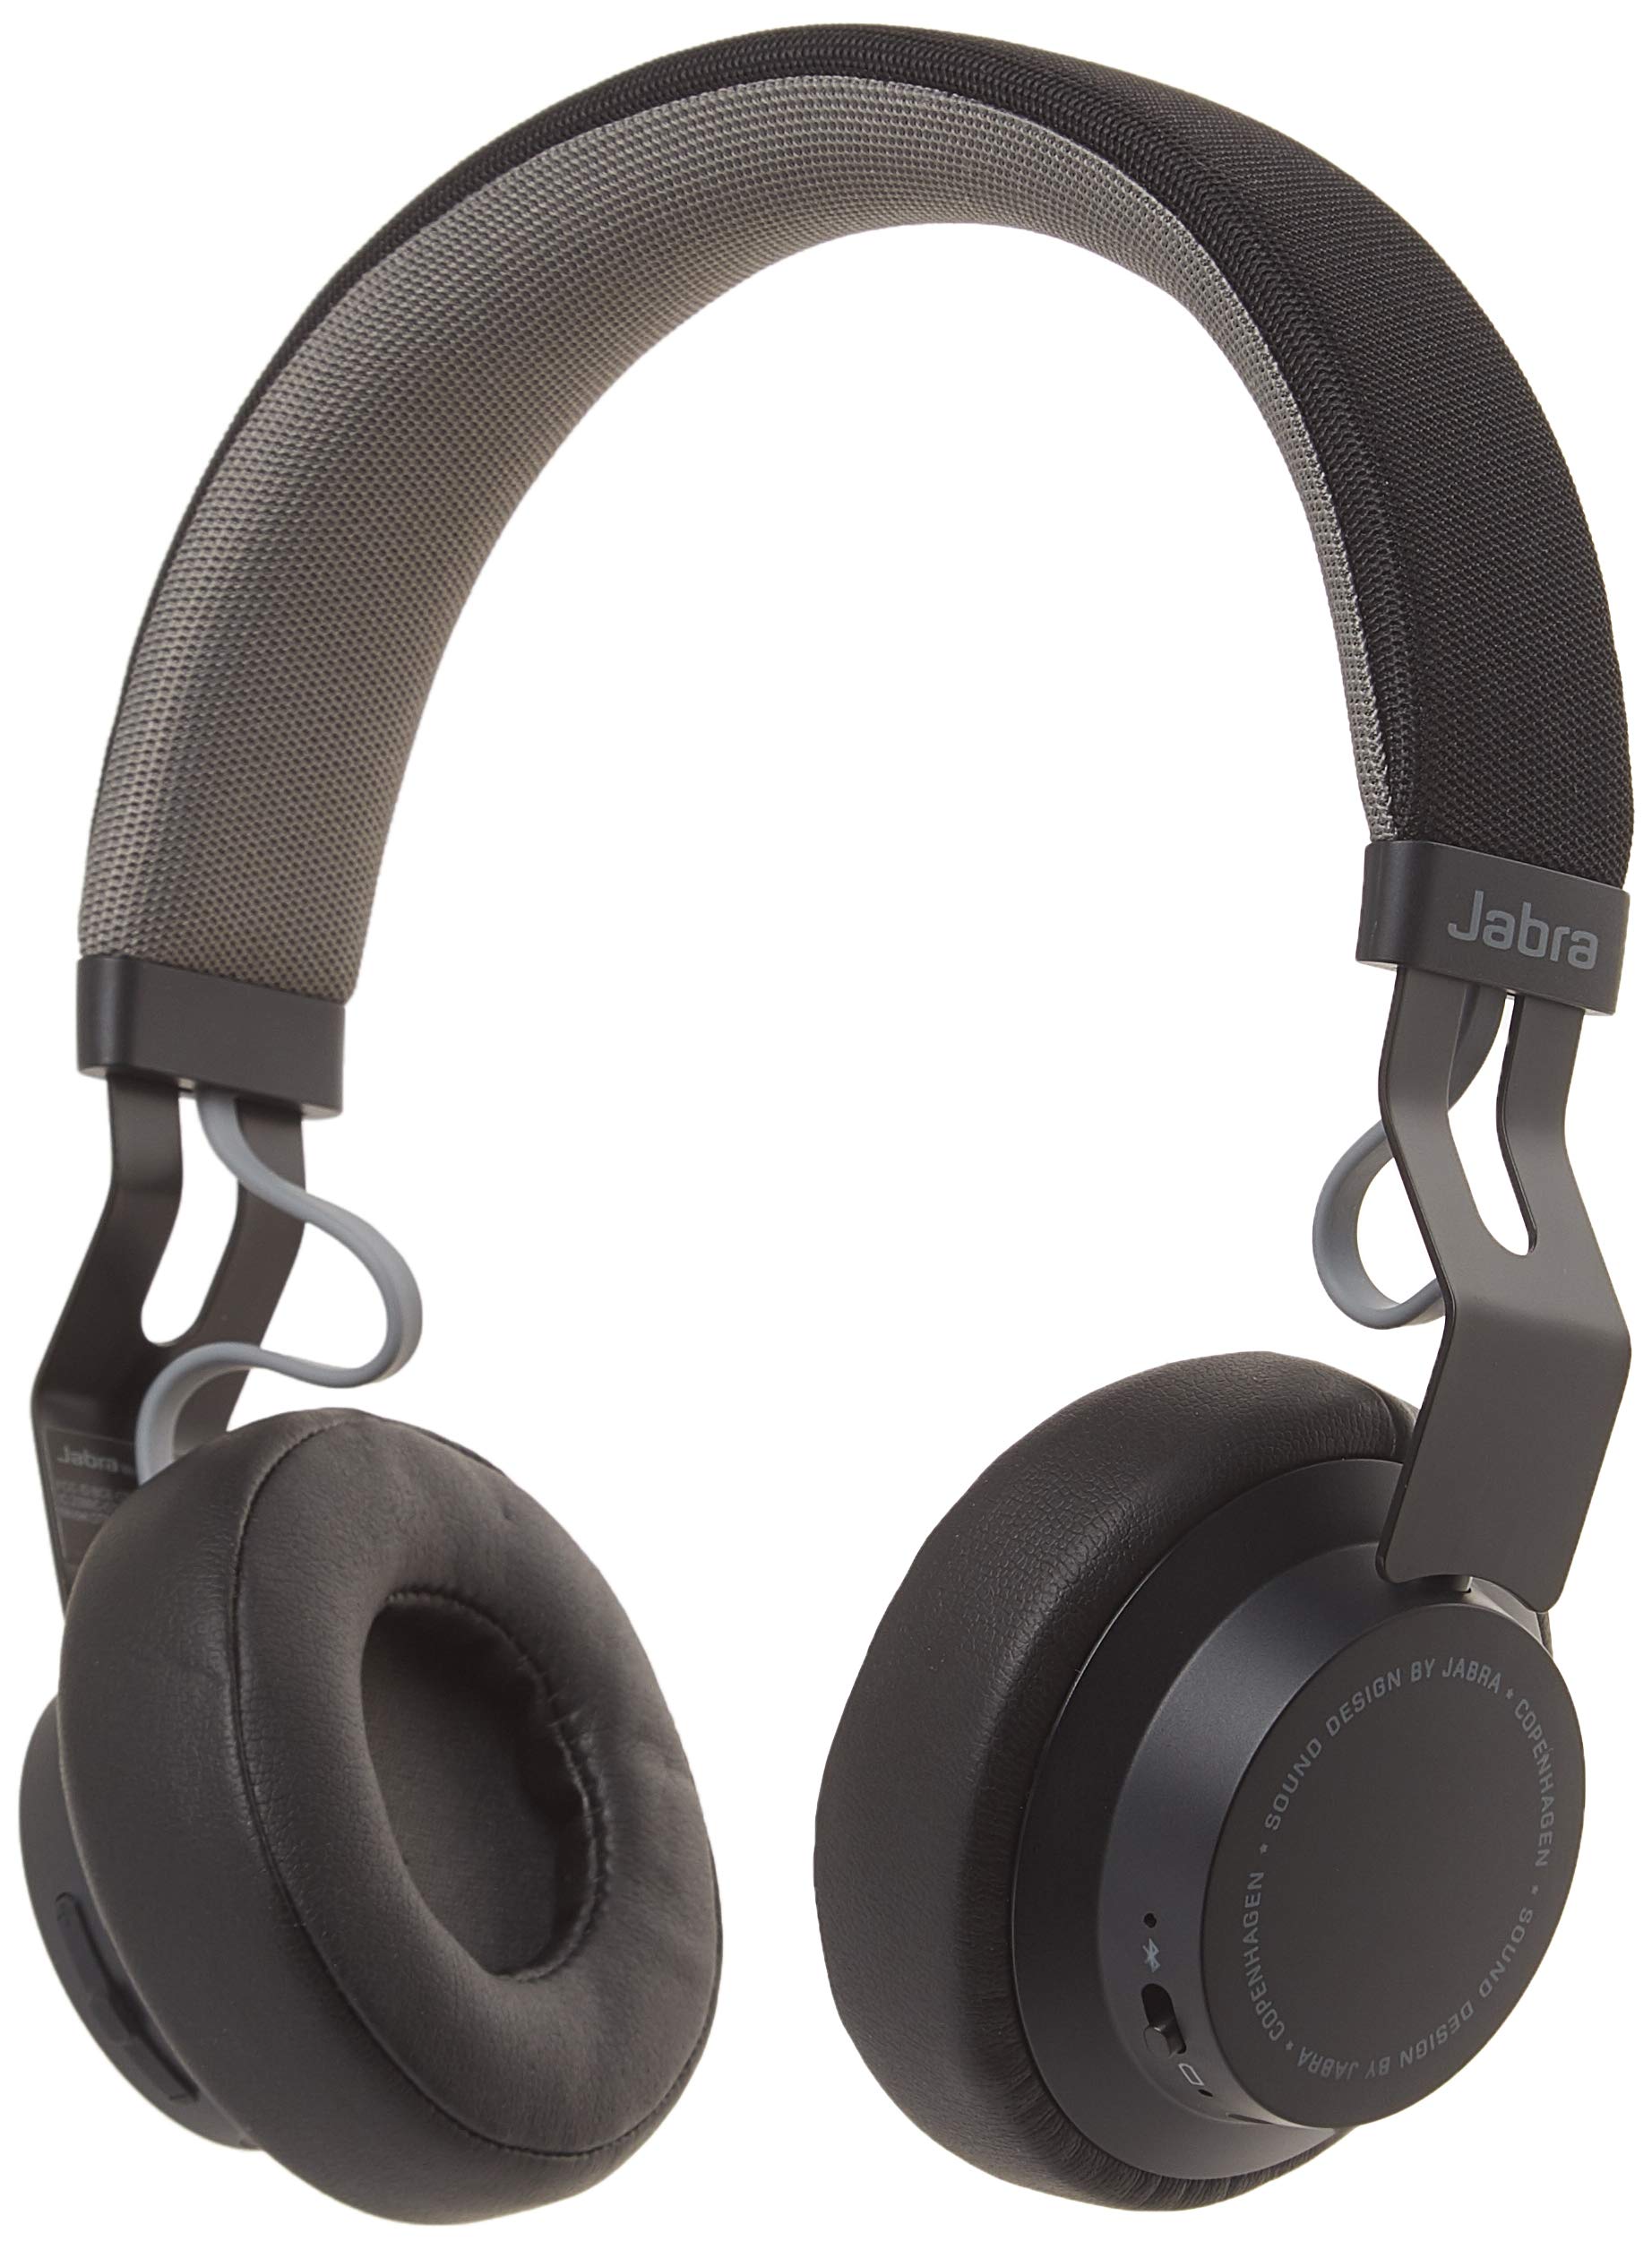 Jabra سماعات Move Wireless Stereo Headphones - أسود